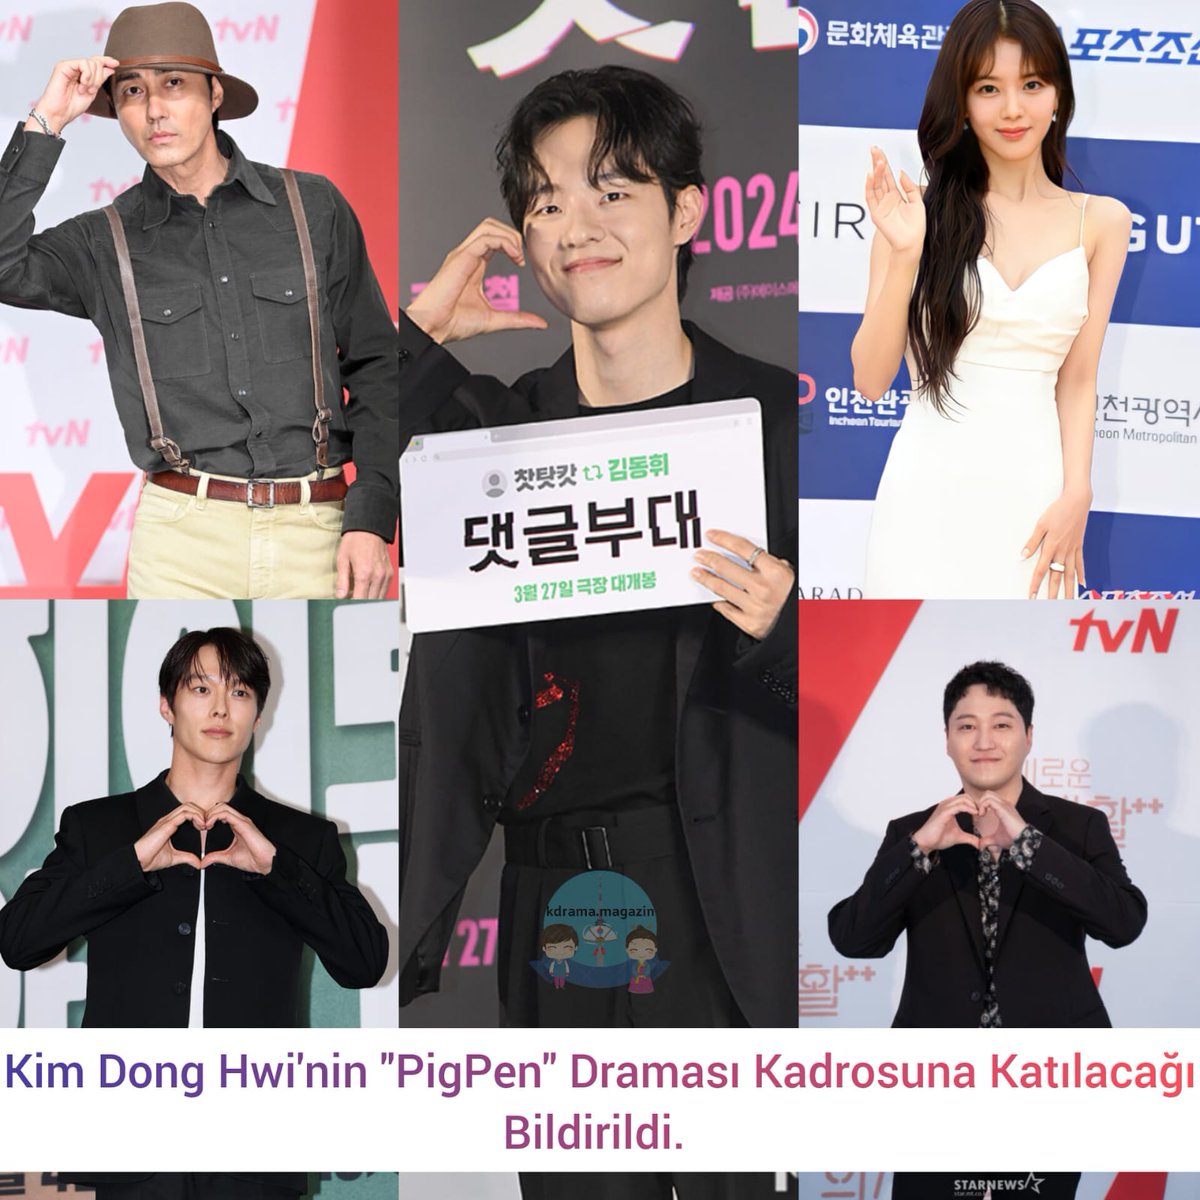 #KimDongHwi'nin #PigPen Draması Kadrosuna Katılacağı Bildirildi. 

#ChaSeungWon #JangKiYong #RohJeongEui #KimDaeMyung